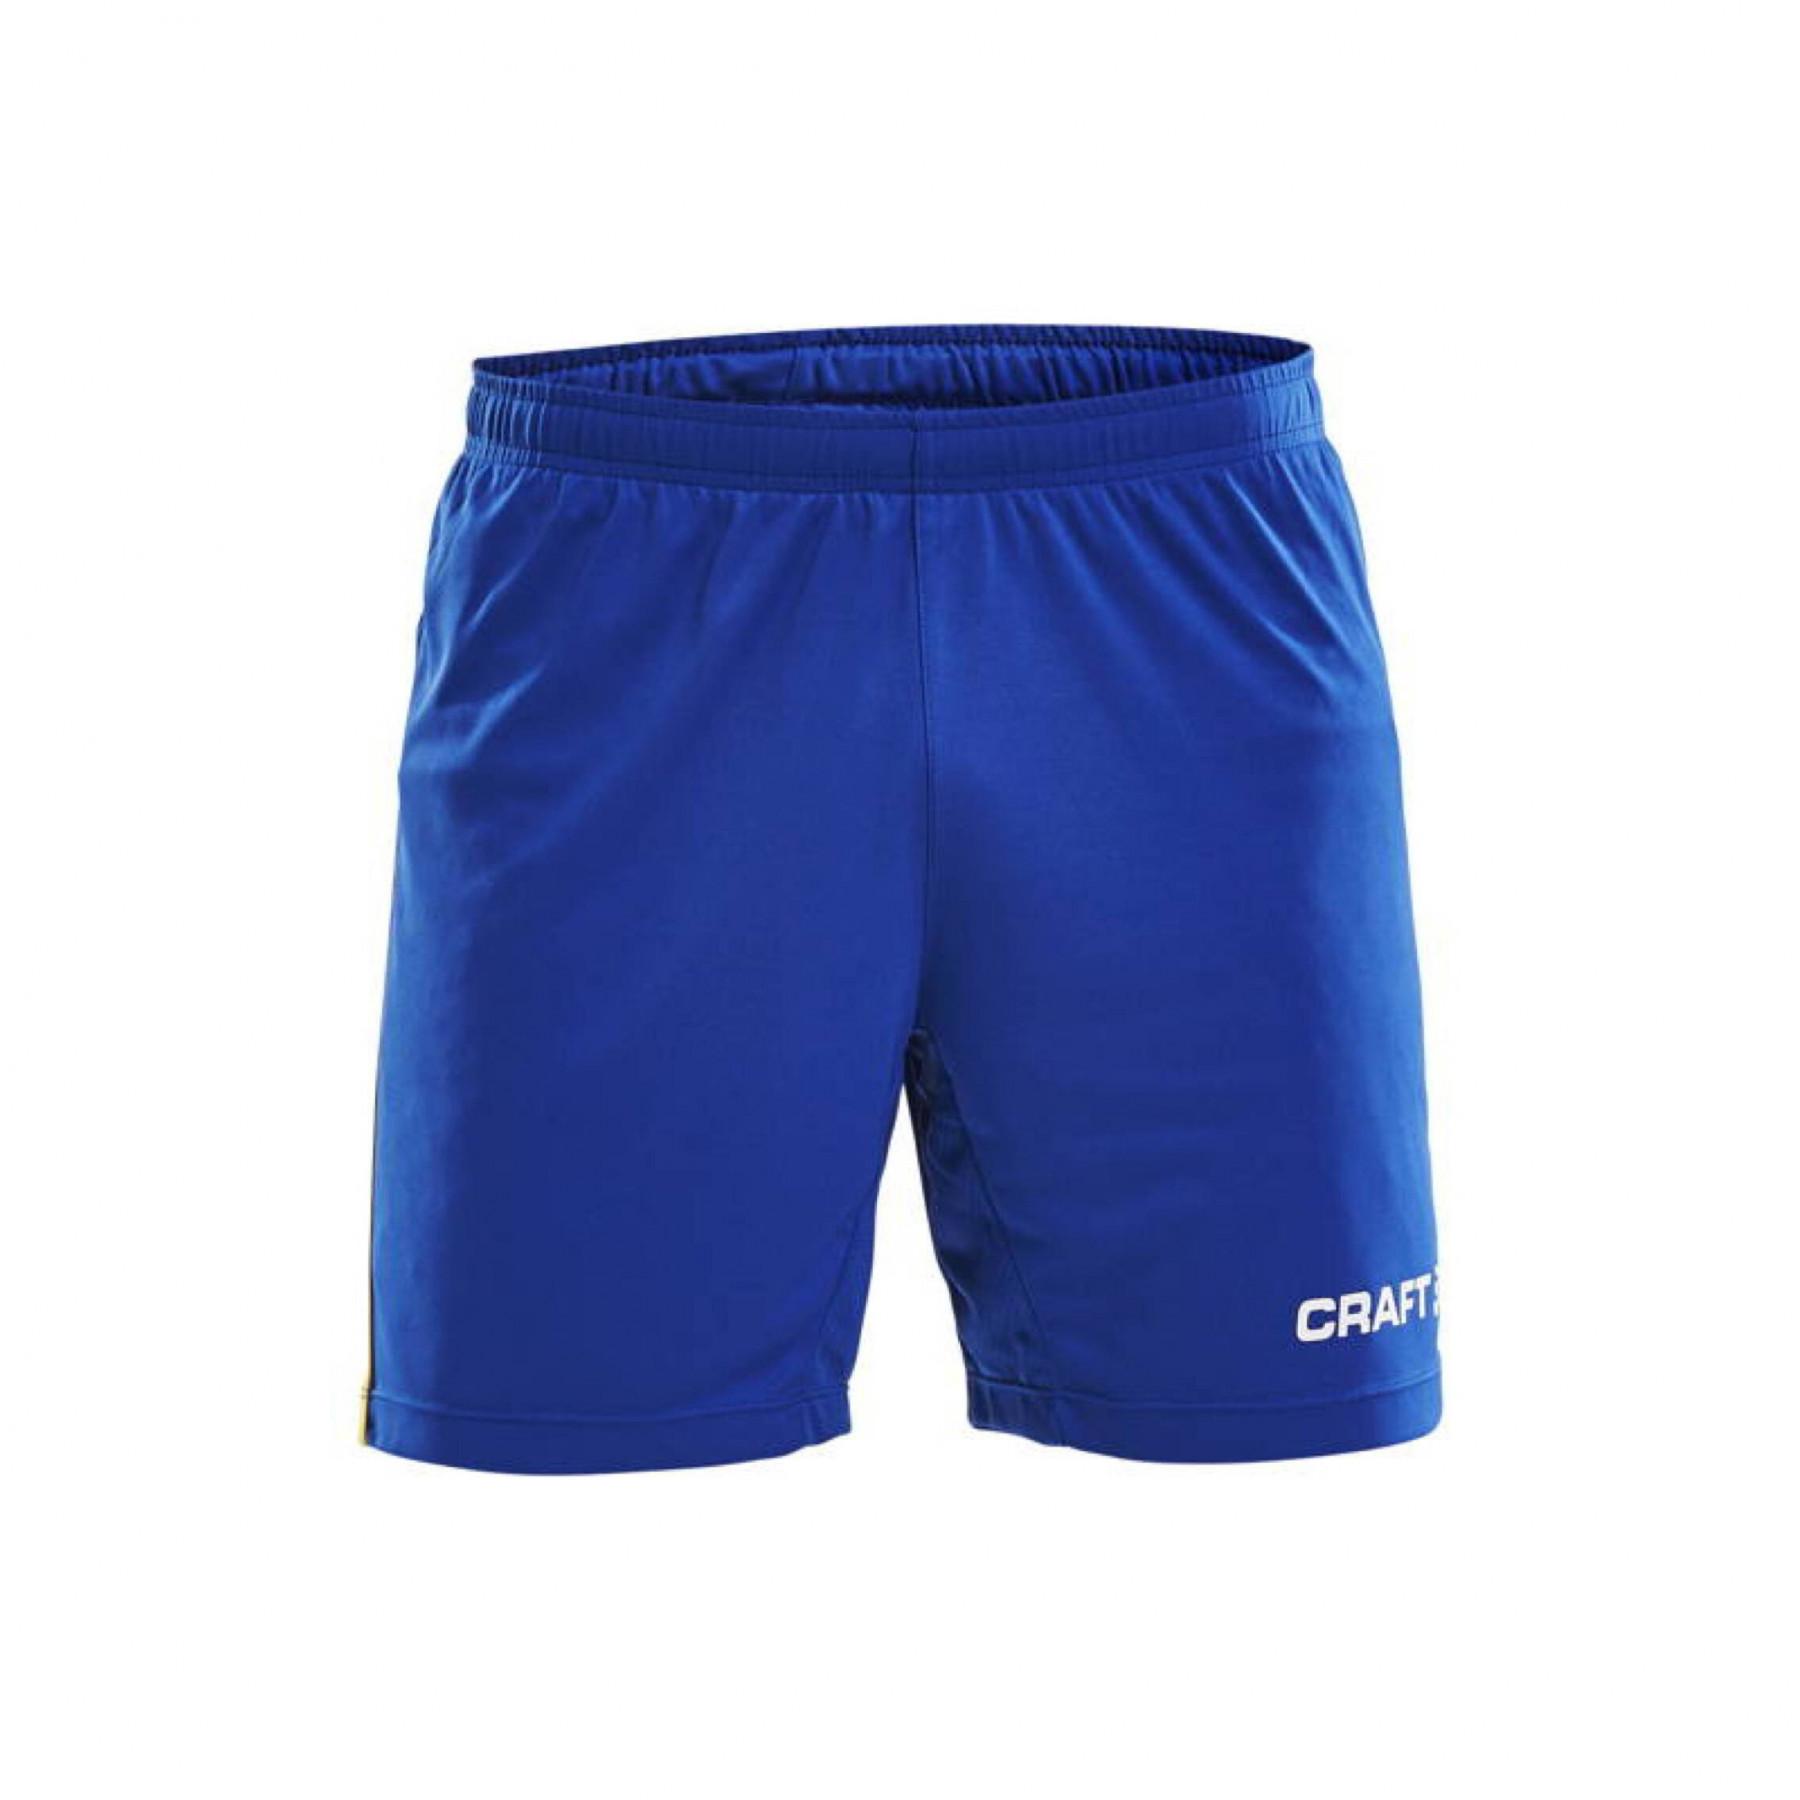 Short Craft progress contrast - Shorts - Men's wear - Handball wear